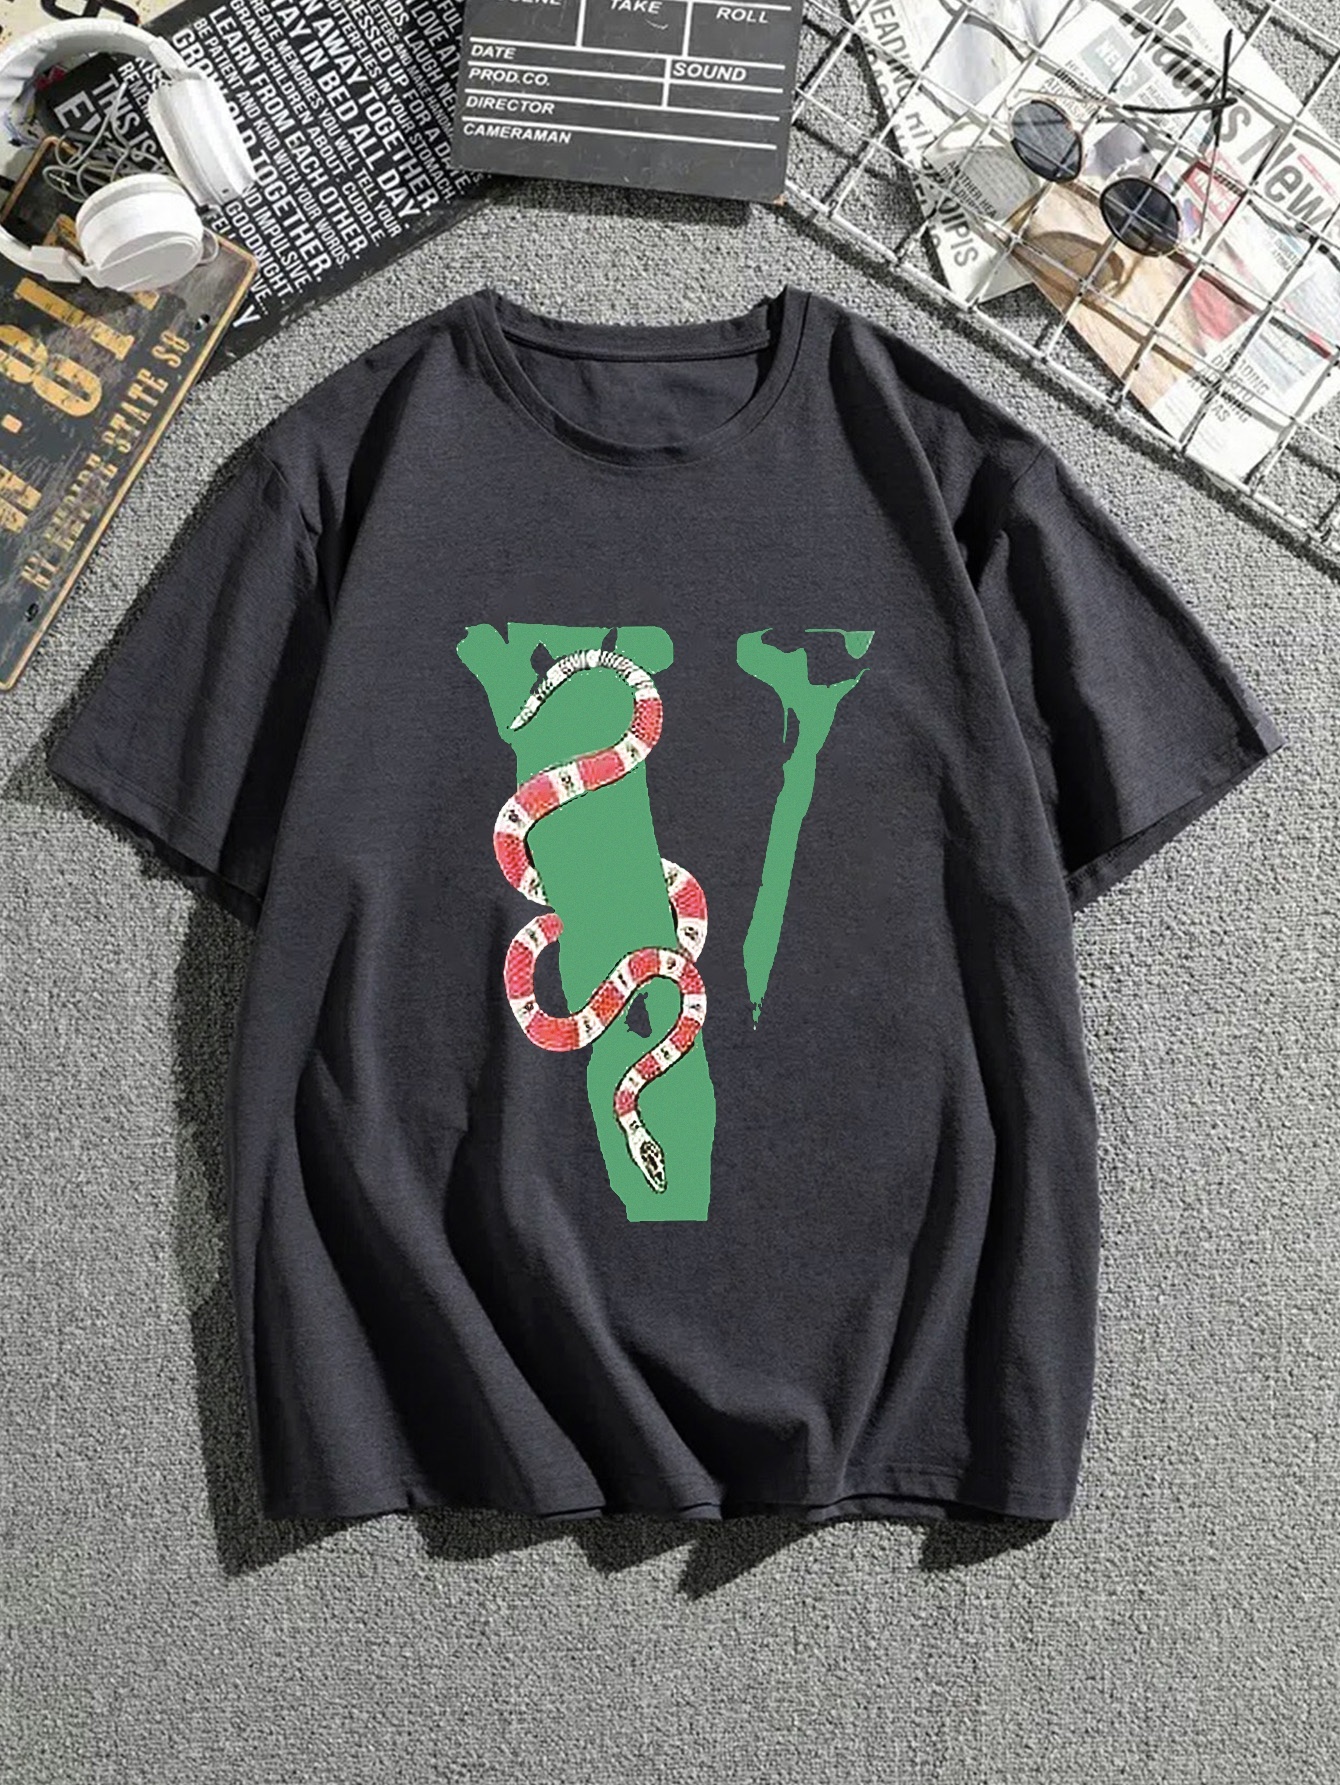 Gucci snake print T-shirt  Print t shirt, Snake print, Cool t shirts